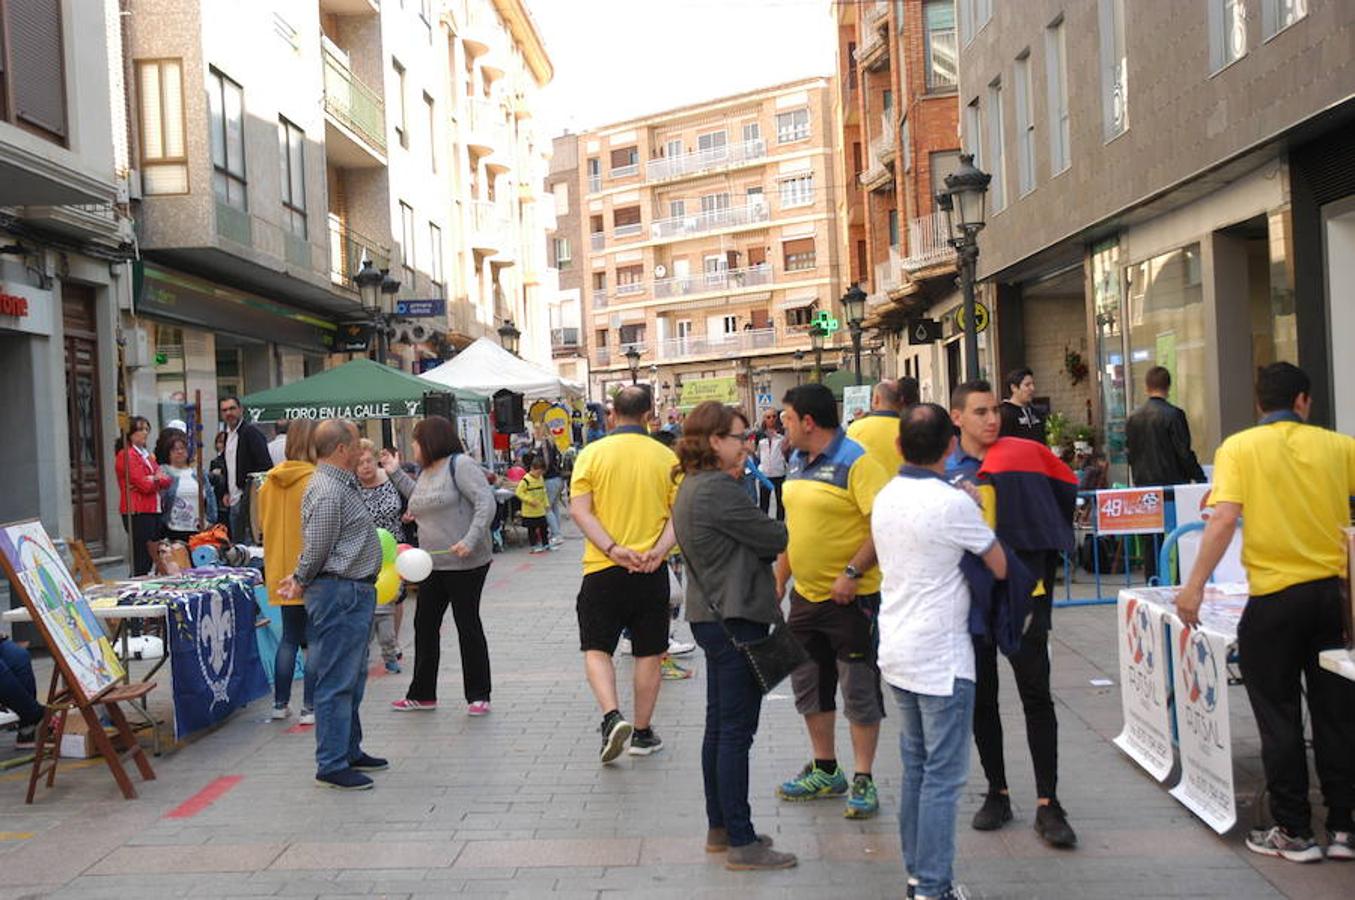 Arnedo ha celebrado esta mañana la II feria de asociaciones en la Puerta Munillo de Arnedo con la asistencia de 30 puestos.